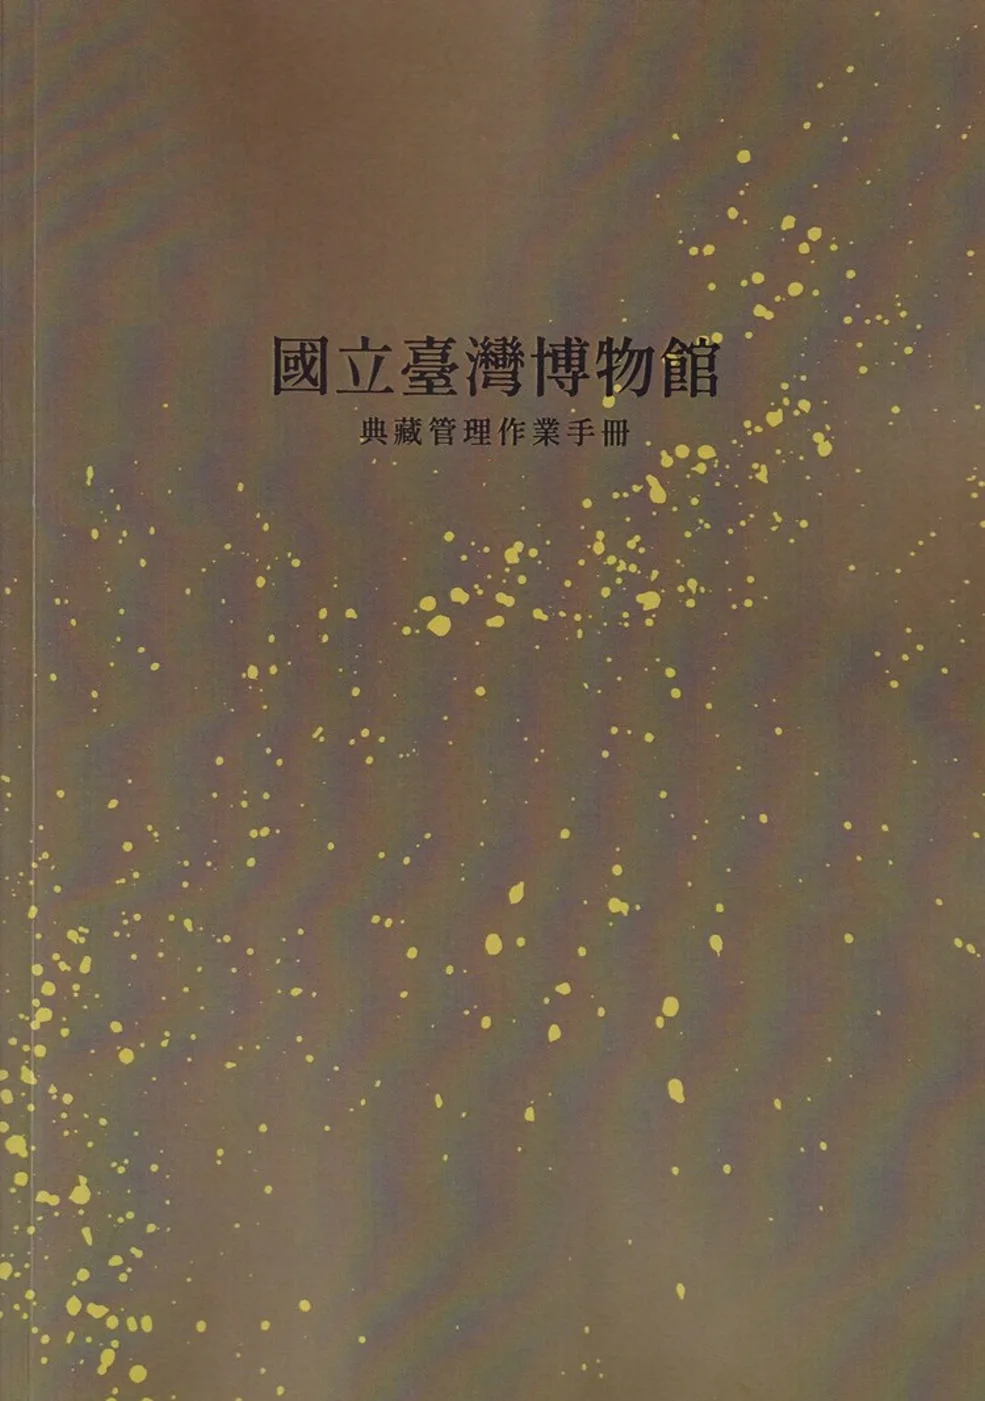 國立臺灣博物館典藏管理作業手冊